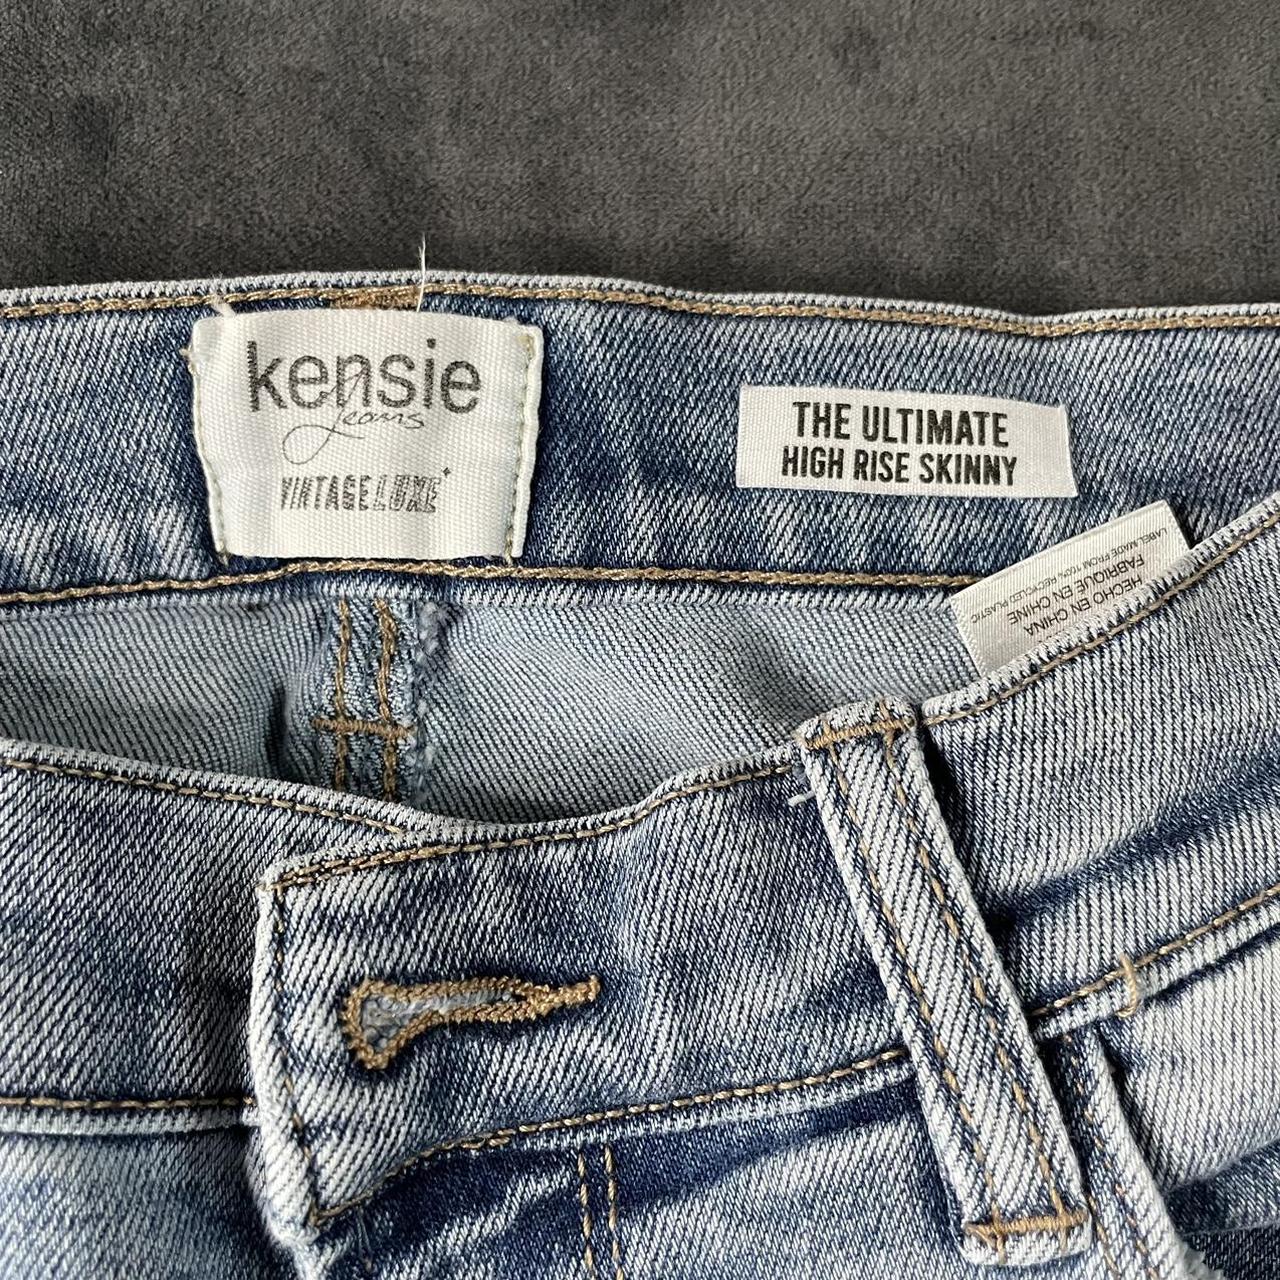 Kensie Jeans Vintage Luxe